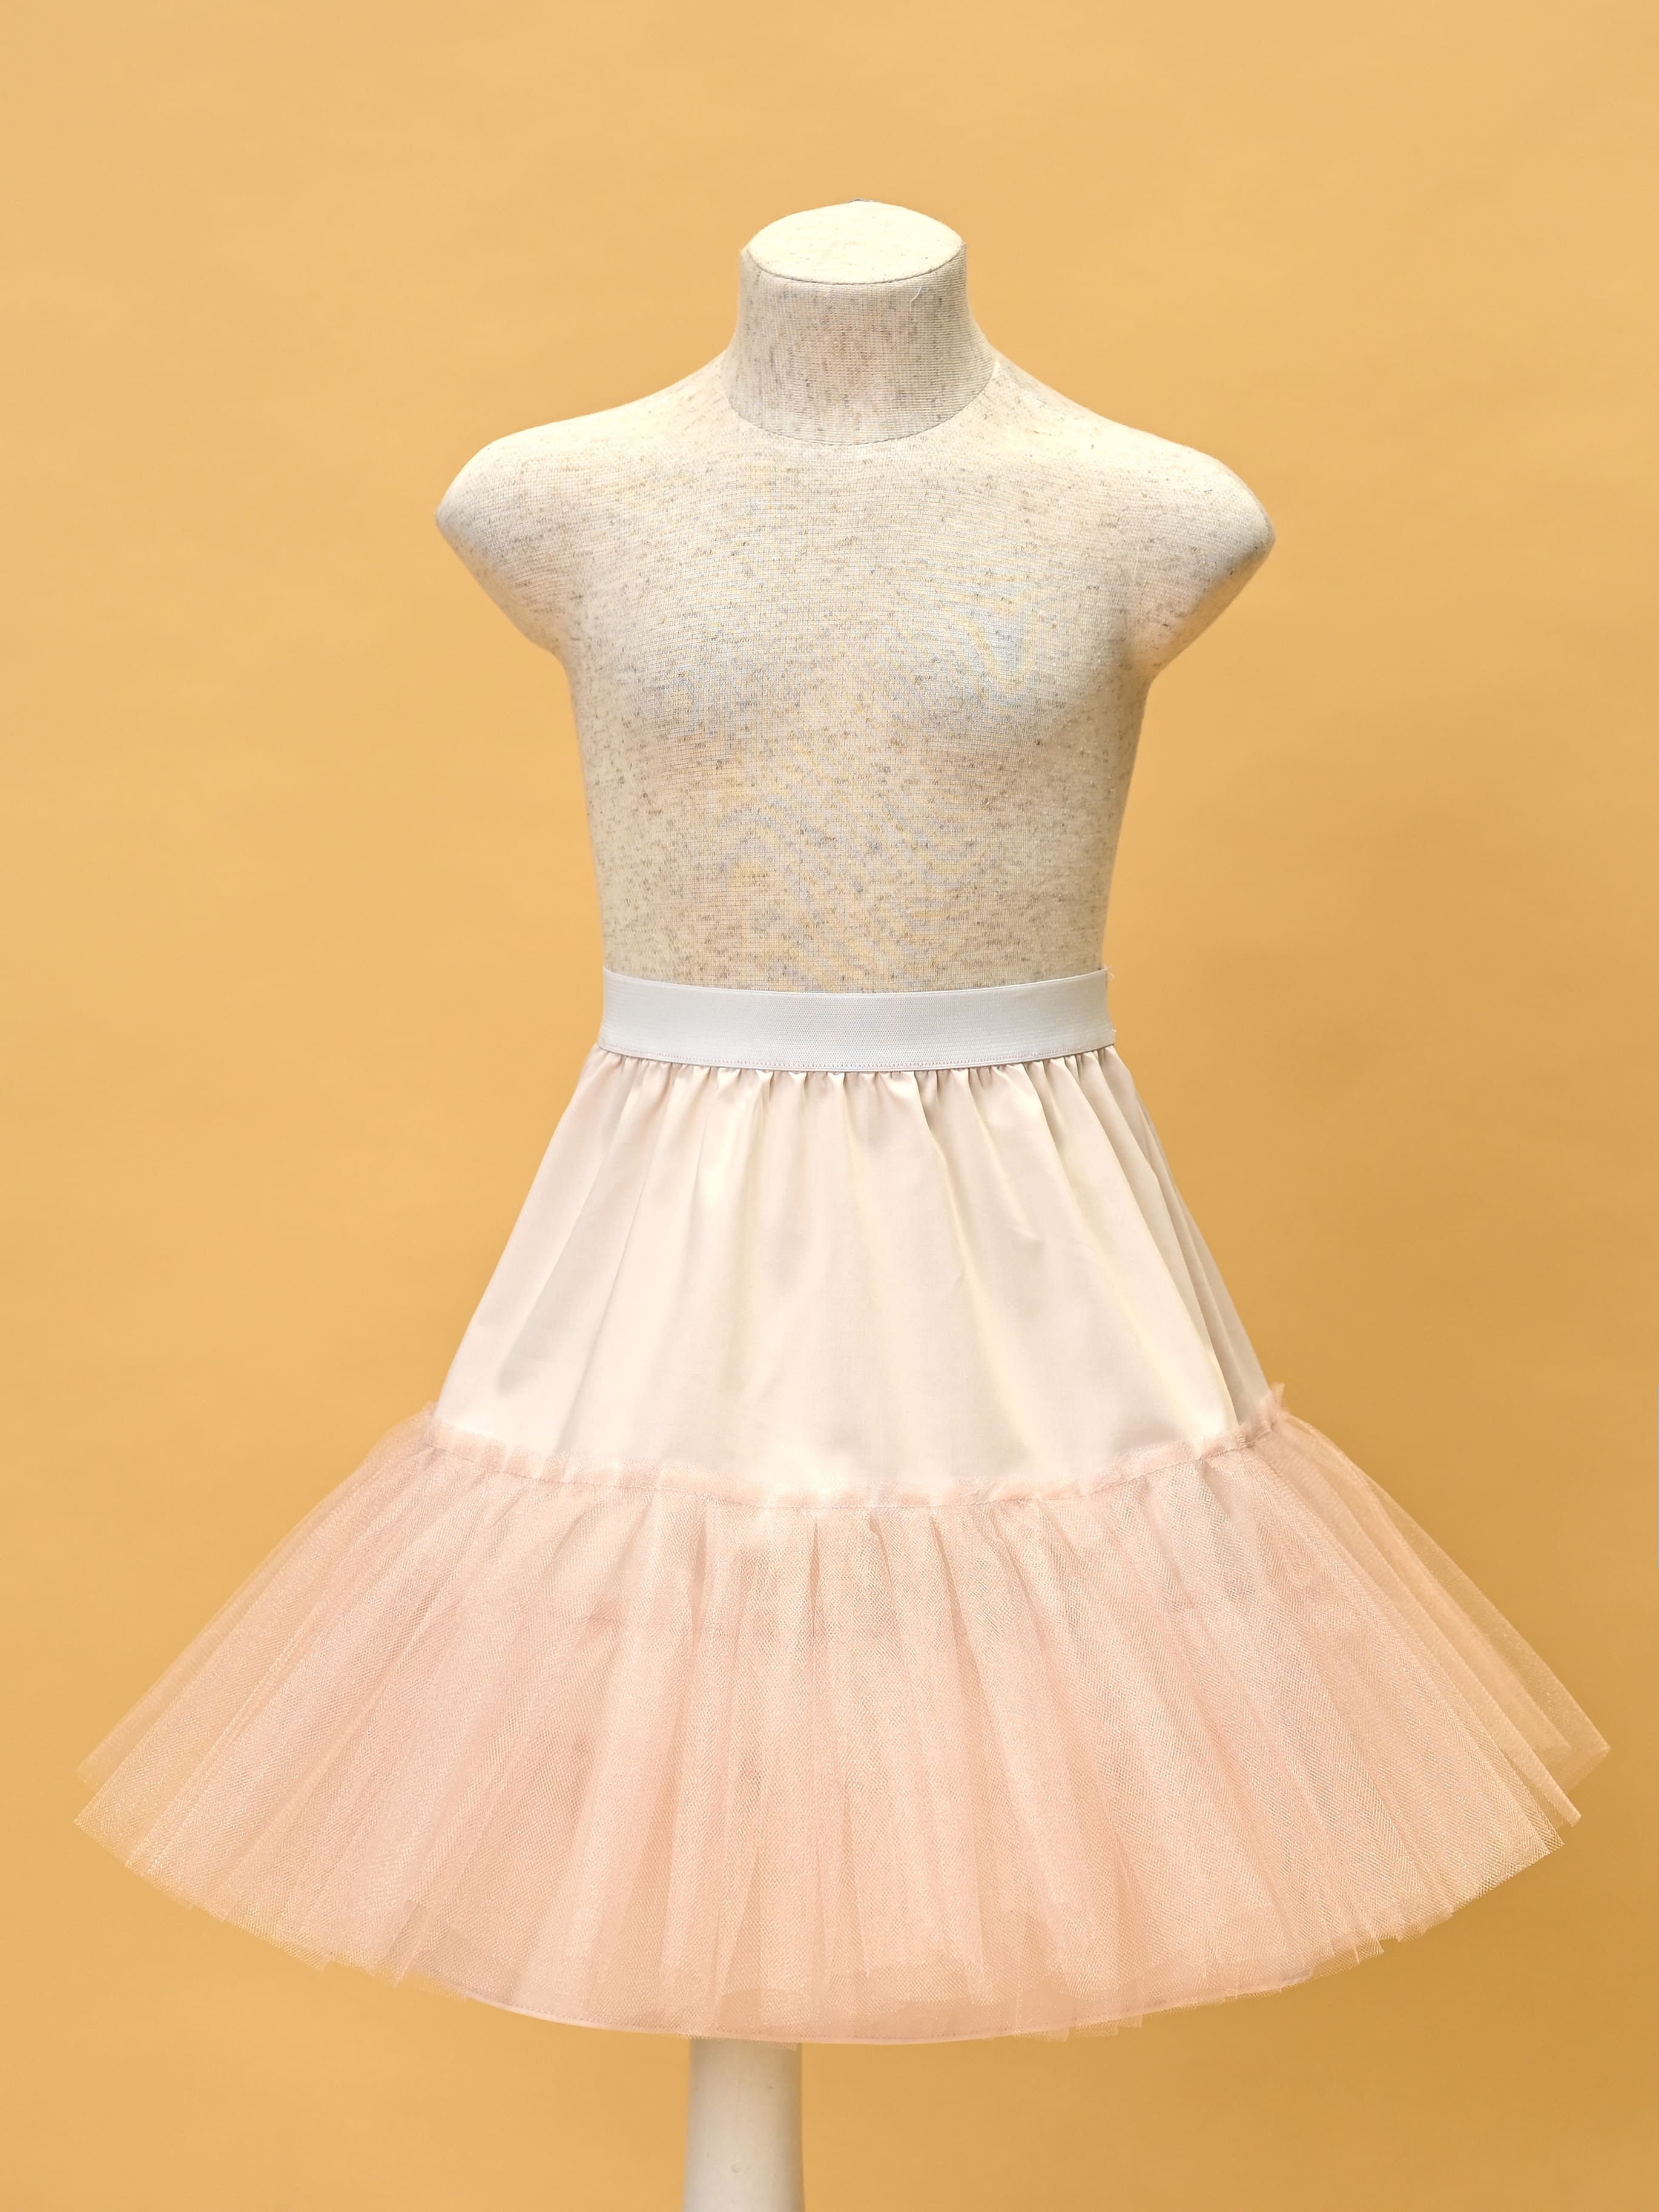 Розовый подъюбник(юбка) для девочки 78083-ДН19 36/146